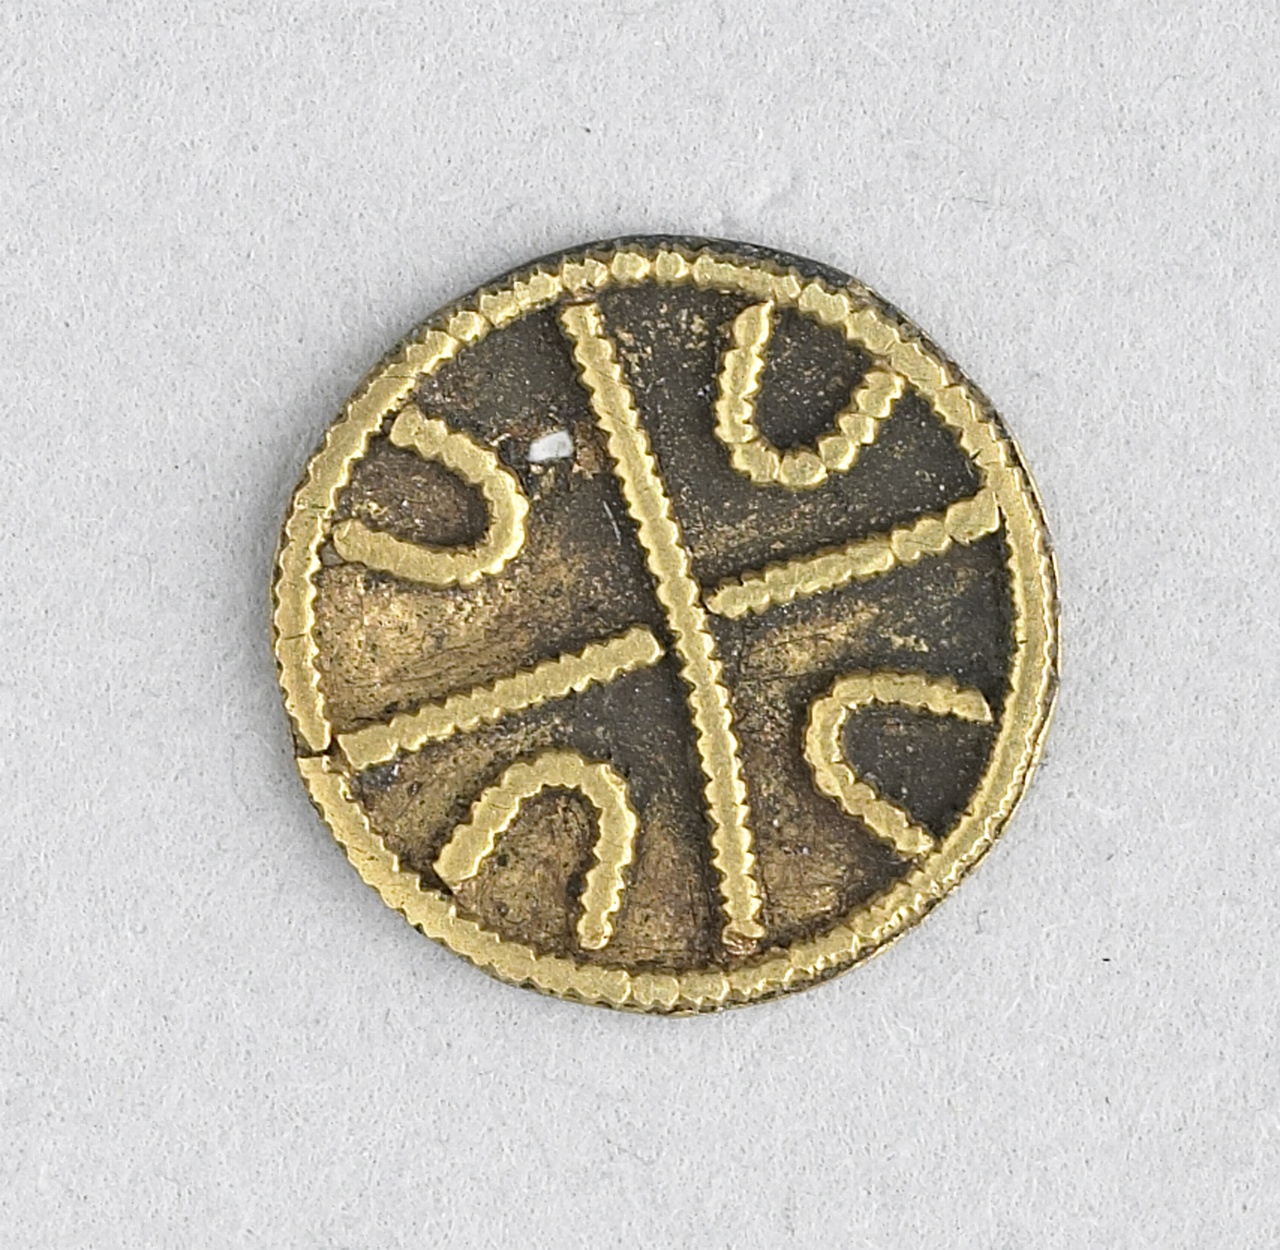 Karolingische ronde gouden mantelspeld, 700-900, vindplaats Domburg